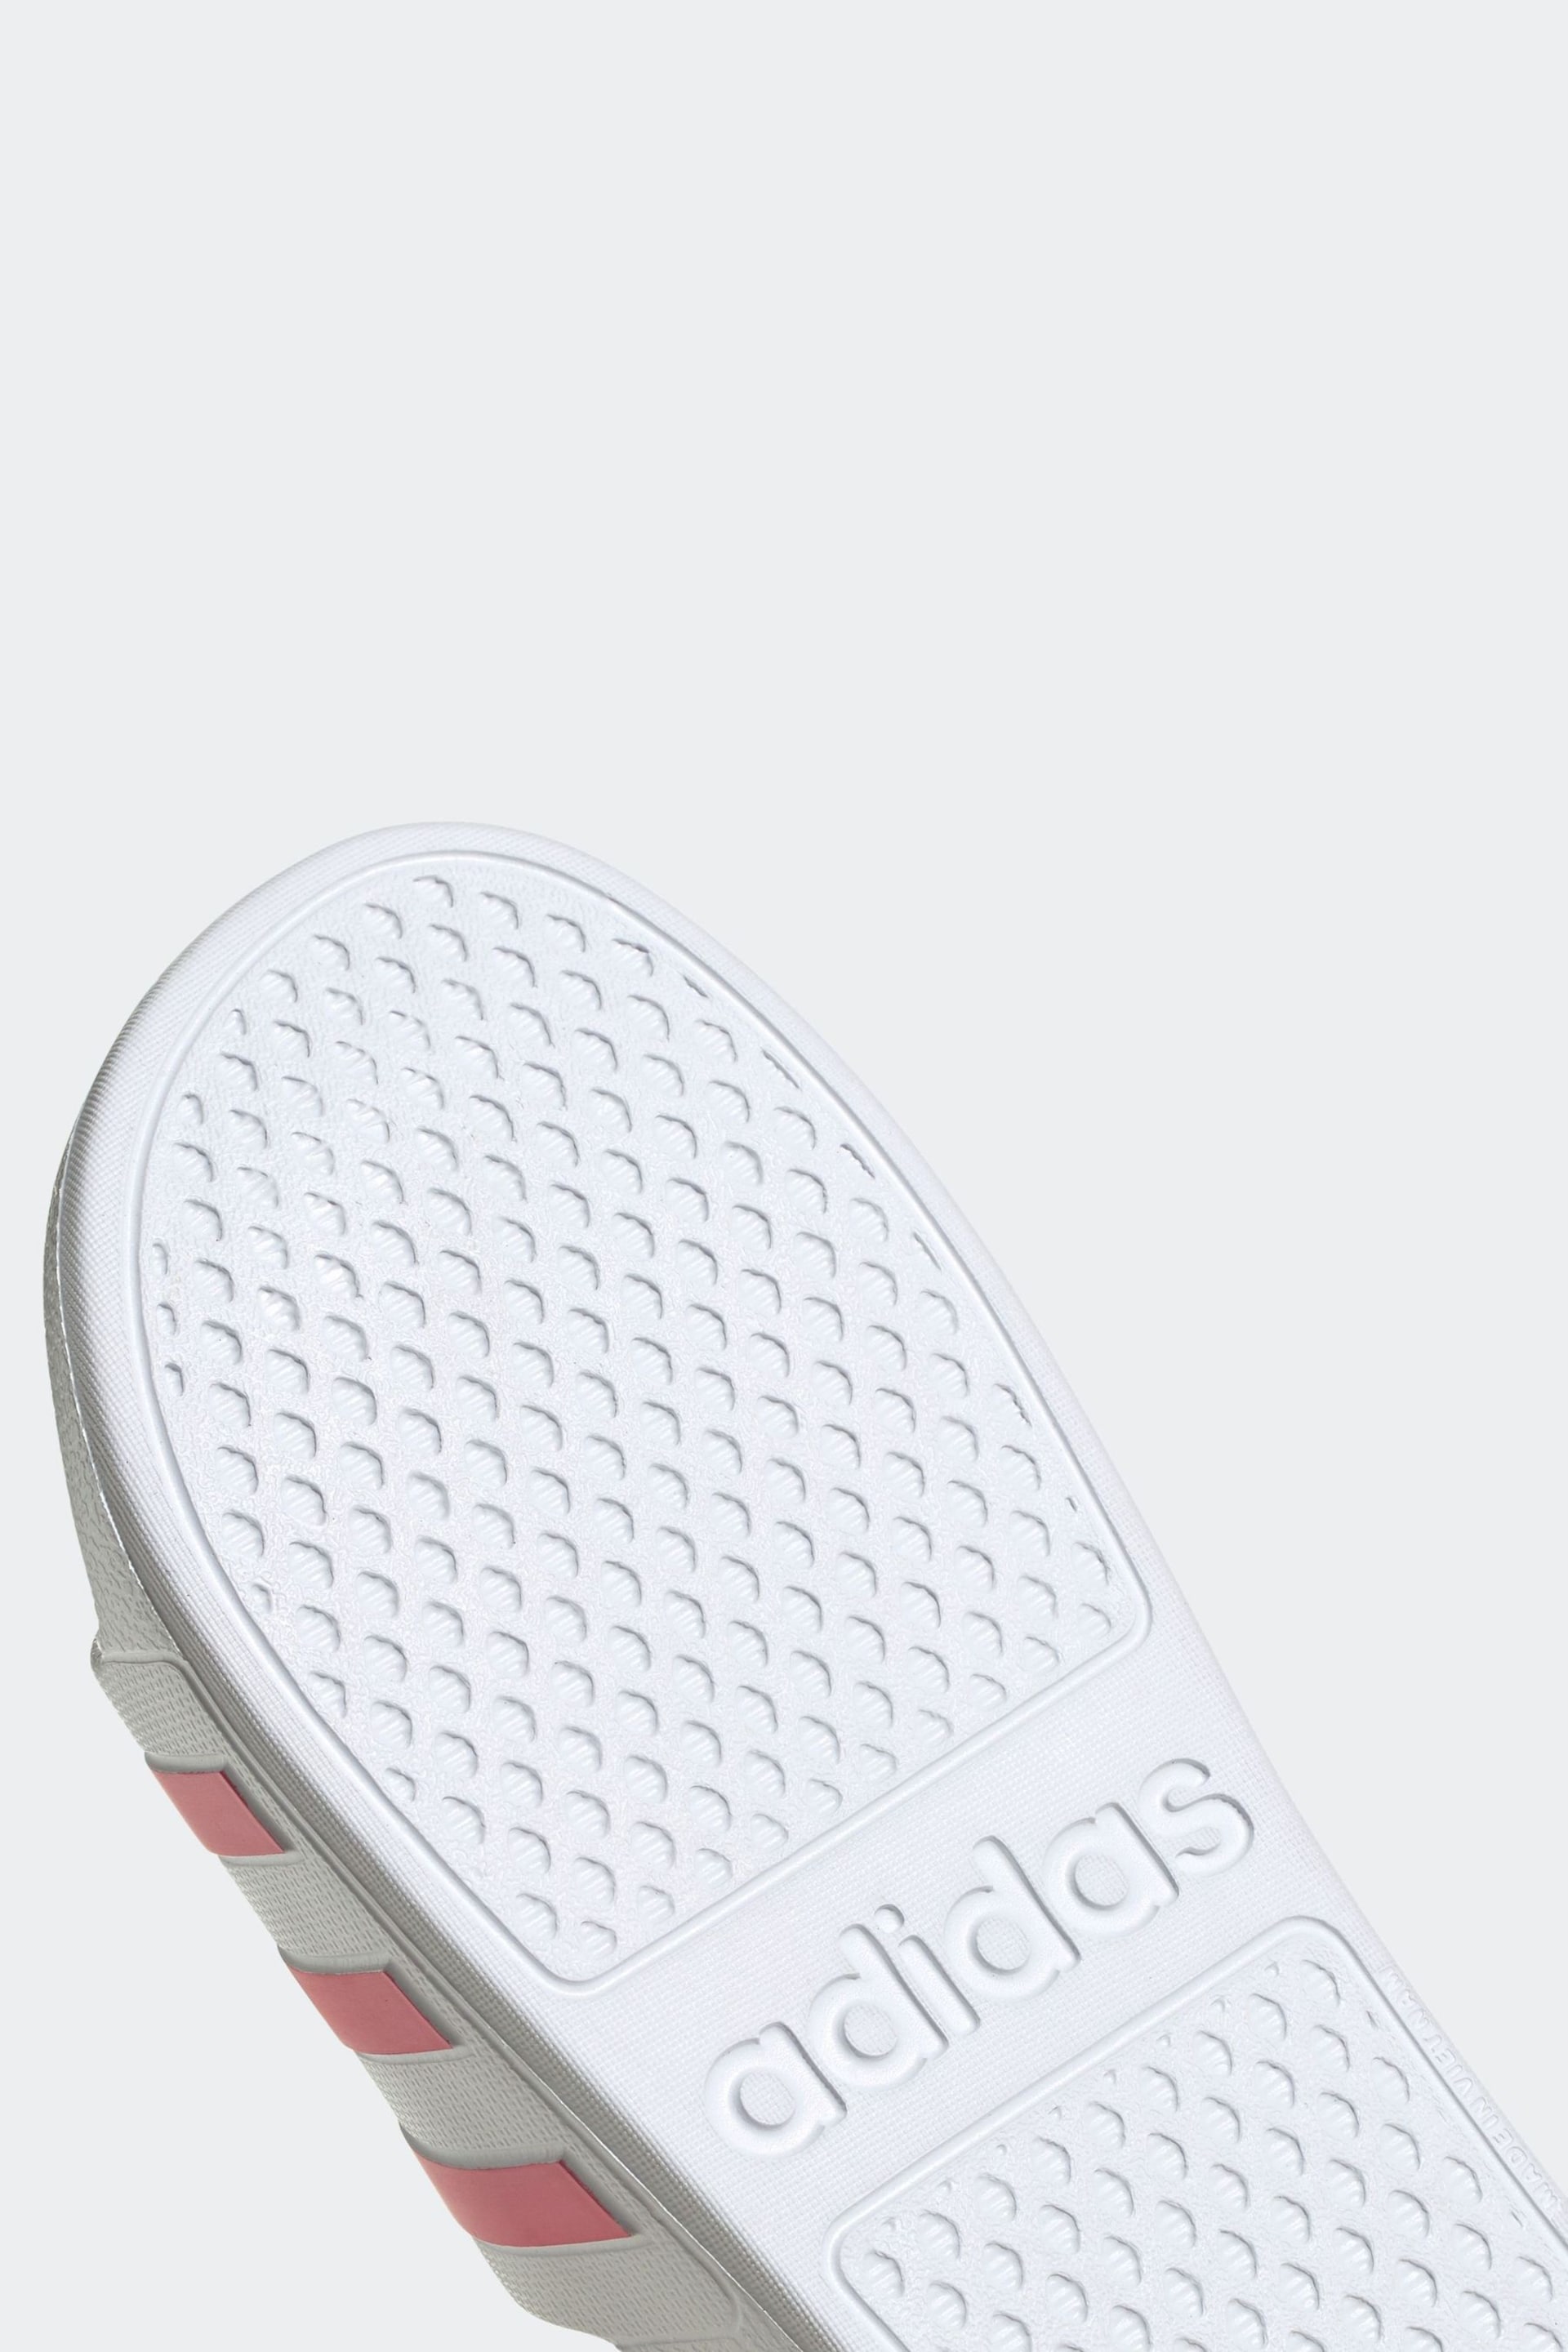 adidas White Adilette Aqua Sliders - Image 9 of 9